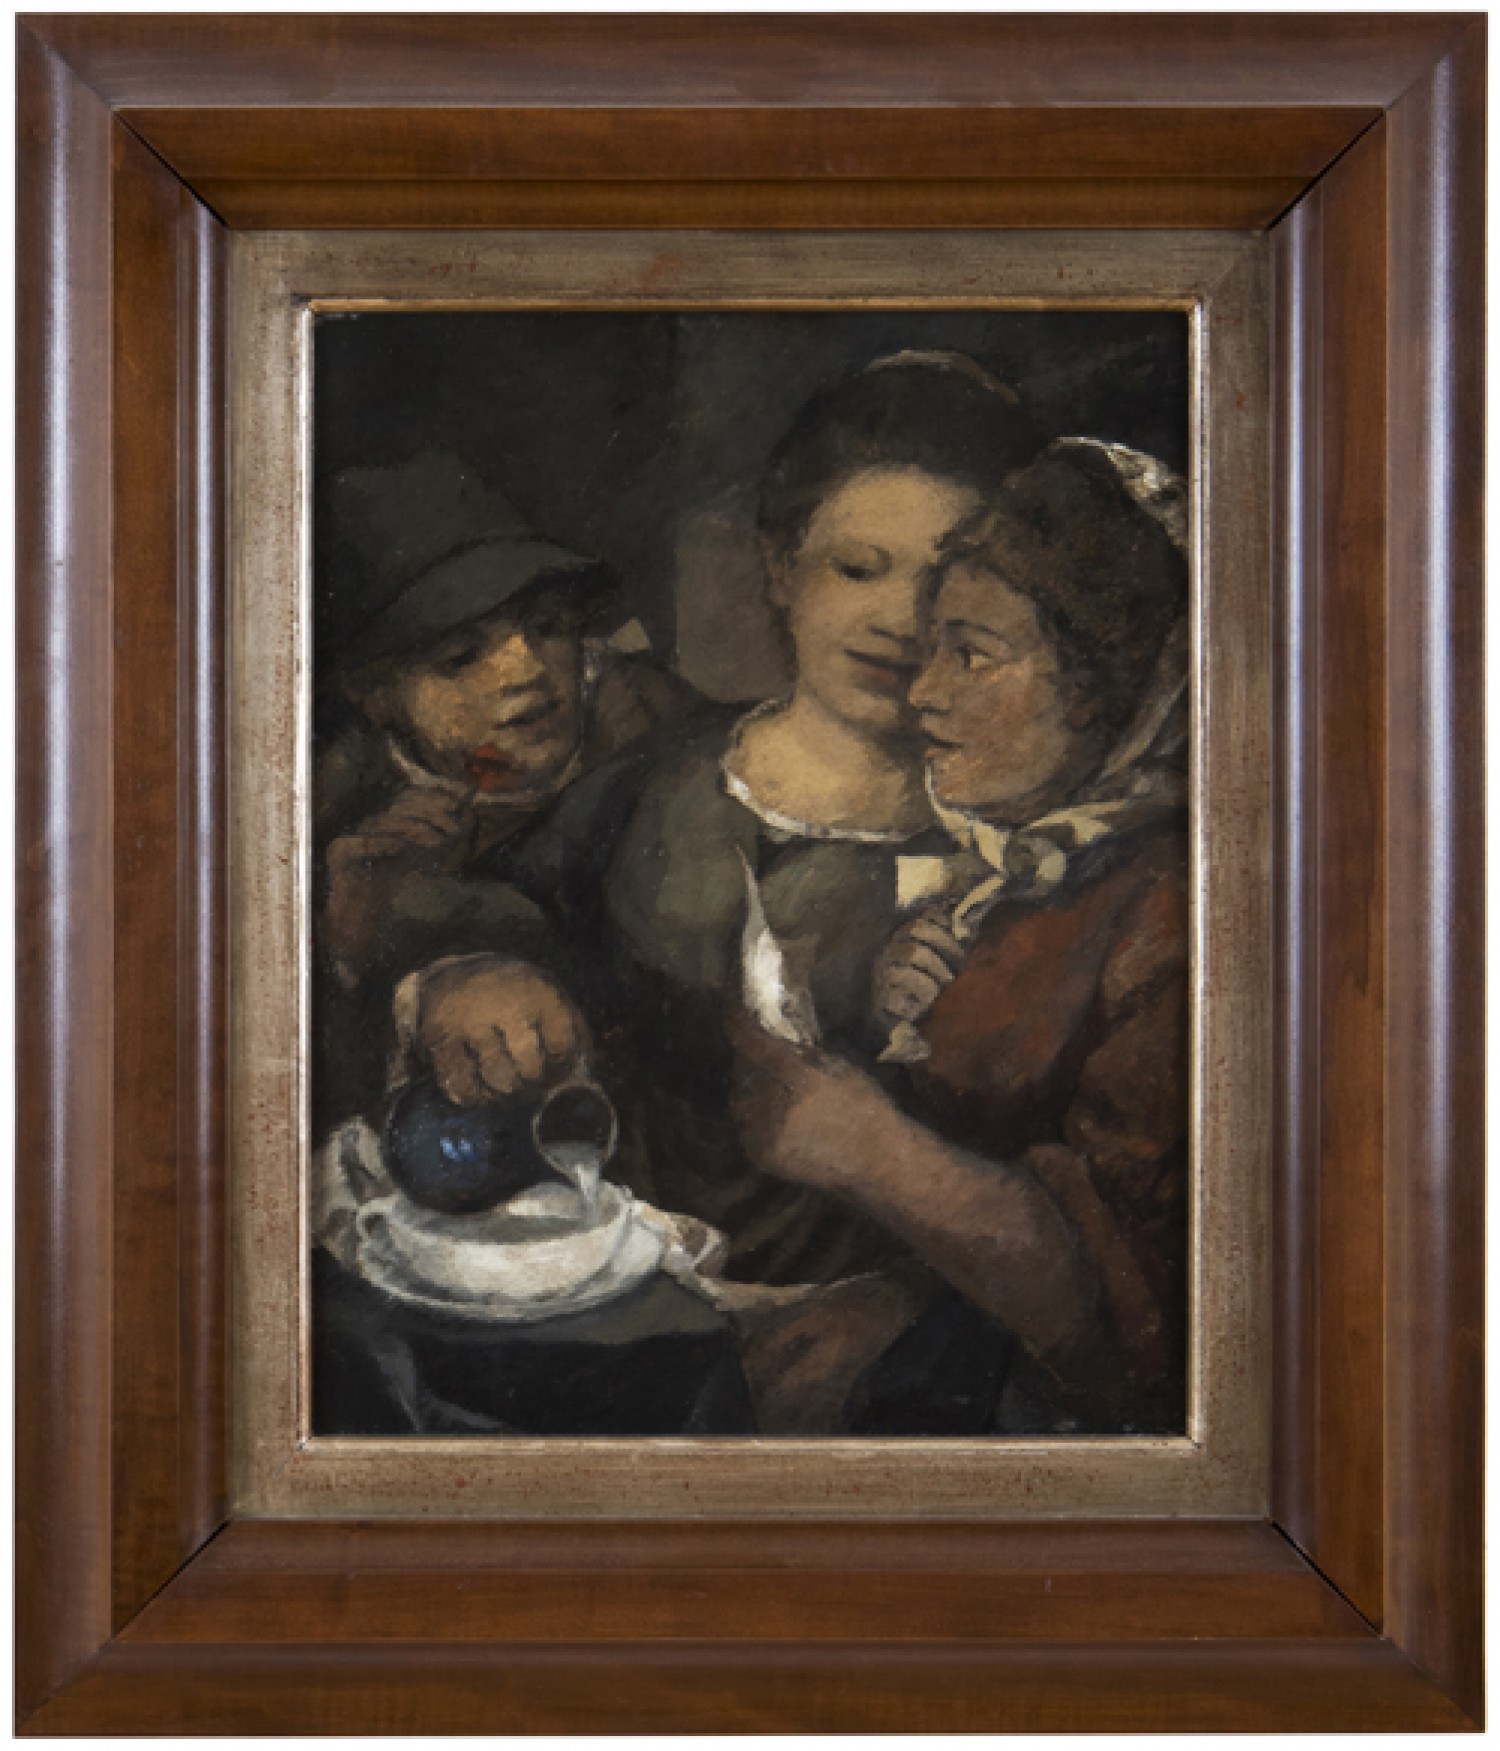 Willi Nowak: Snídaně (Přítelkyně), 1907  olej na dřevěné desce, 40 x 31,5 cm vyvolávací cena: 380 000 Kč (+ 22% provize)  Galerie Pictura 14. 3. 2018